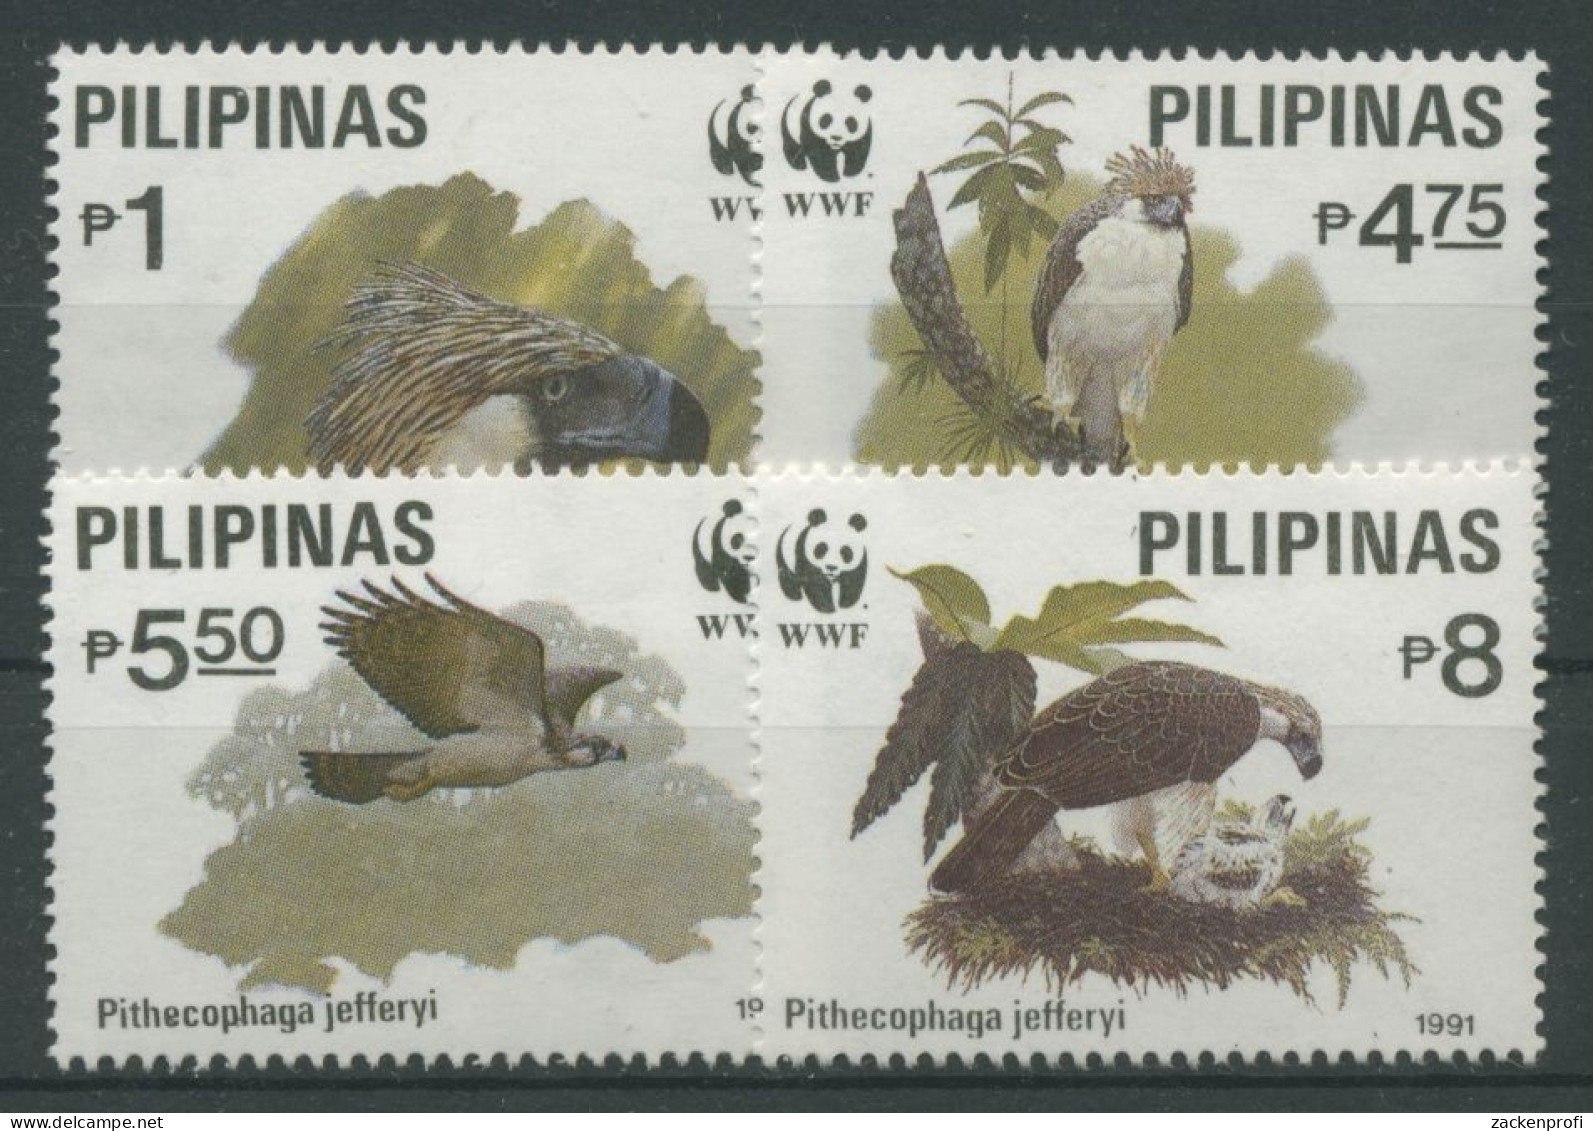 Philippinen 1991 WWF Tiere Vögel Affenadler 2038/41 Postfrisch - Philippinen